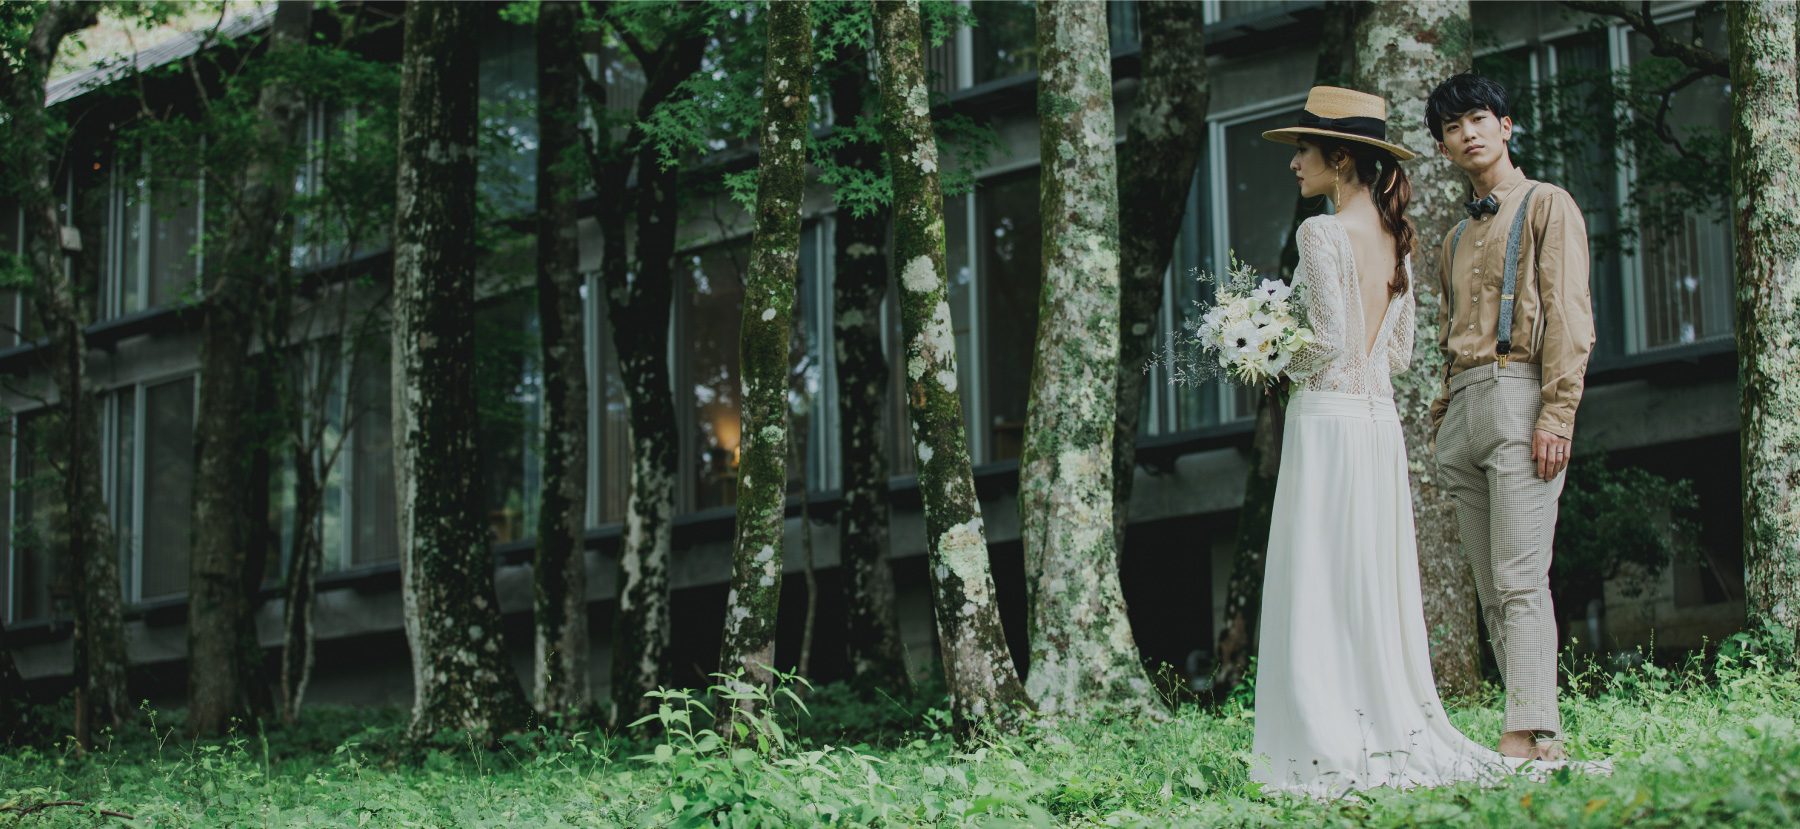 箱根リトリートの自然豊かな森の中にたたずむ新郎新婦の2人